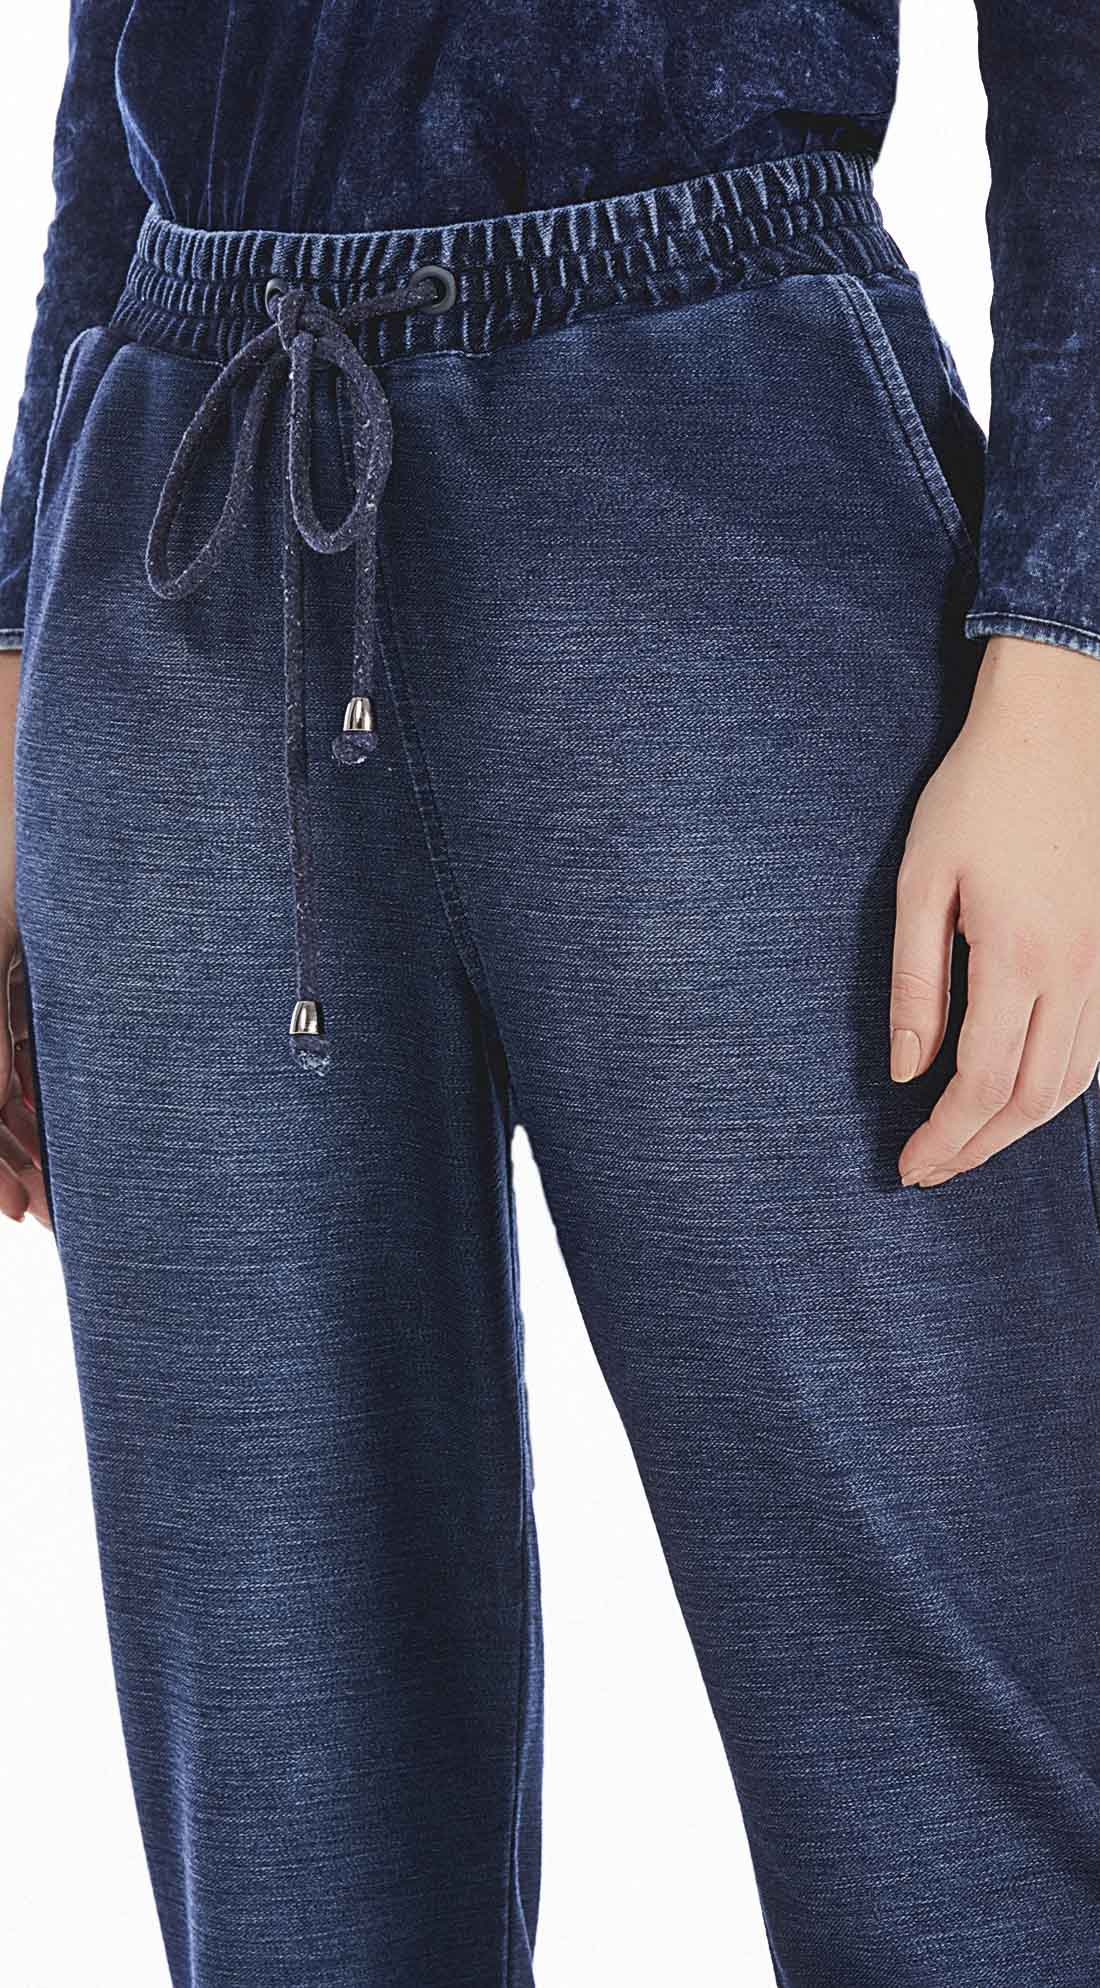 body renda com calça jeans